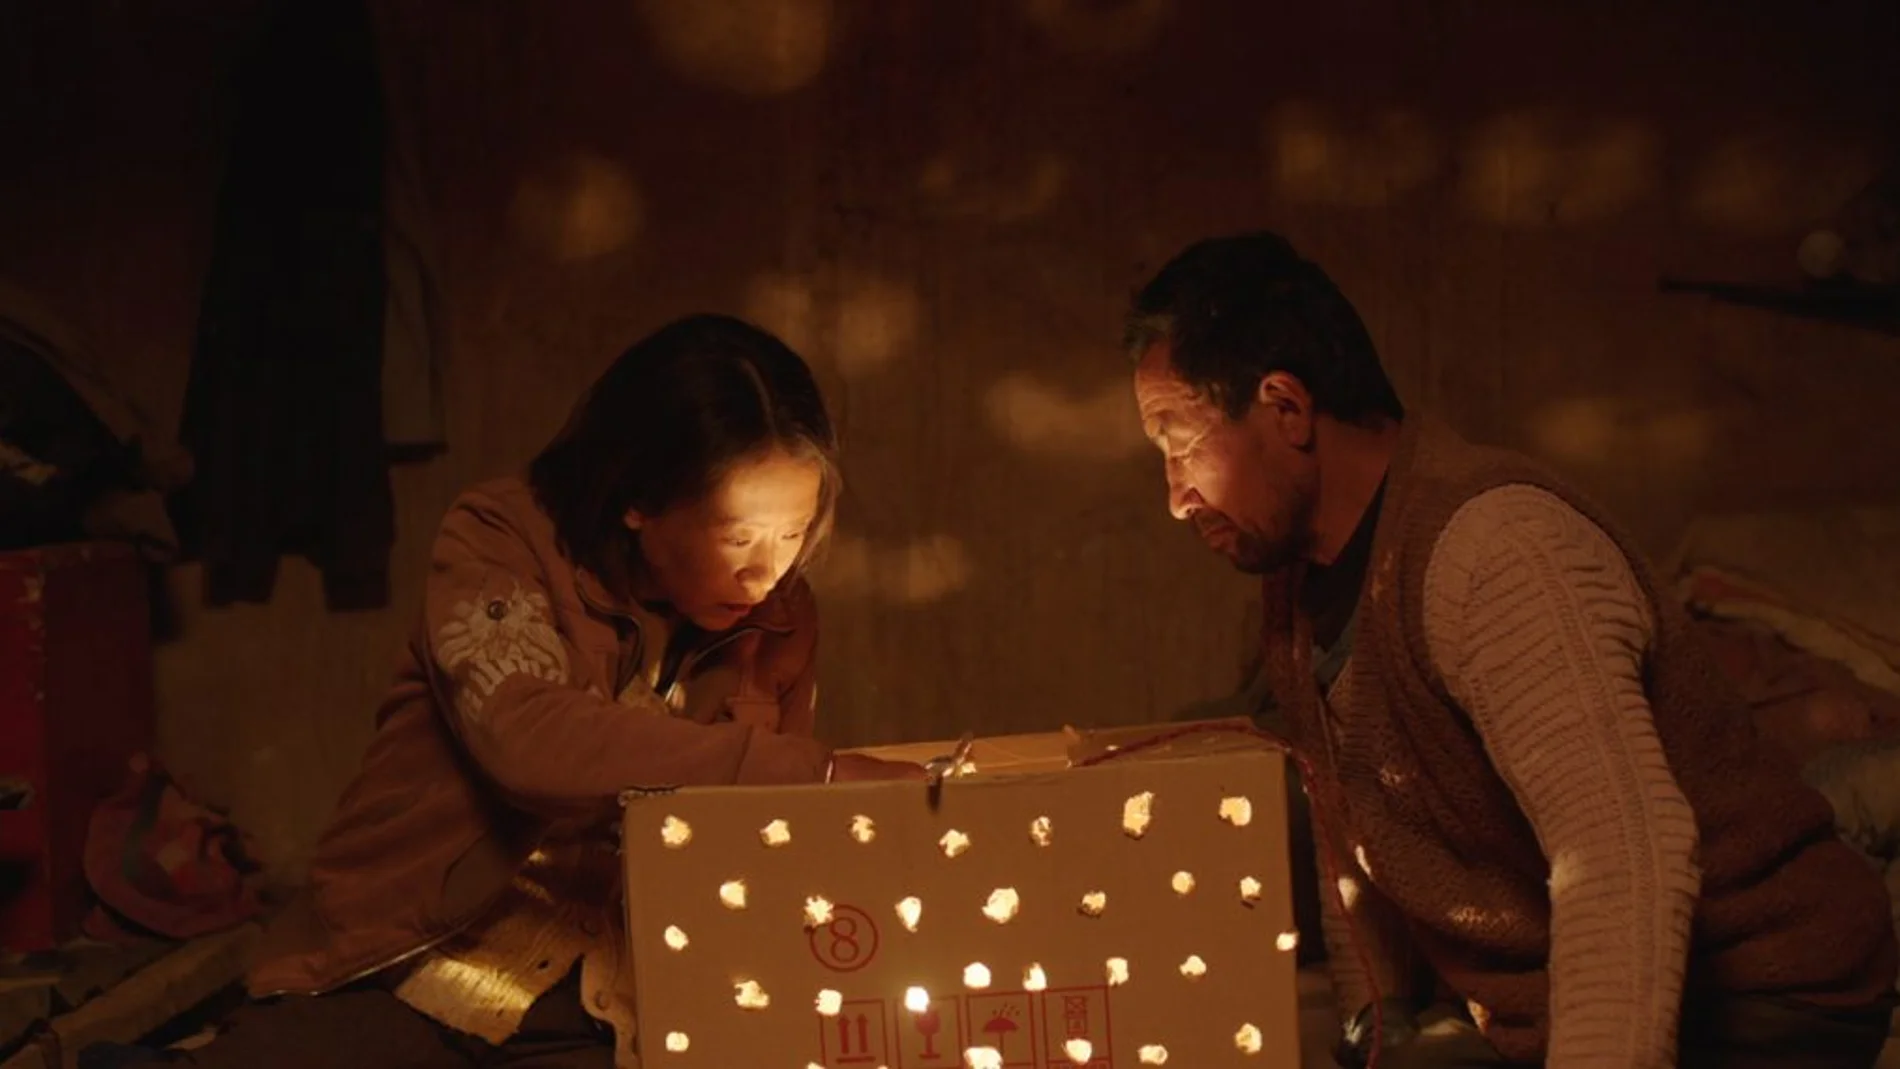 «Return to Dust», del director Li Ruijun, es una de las principales candidatas al Oso de oro